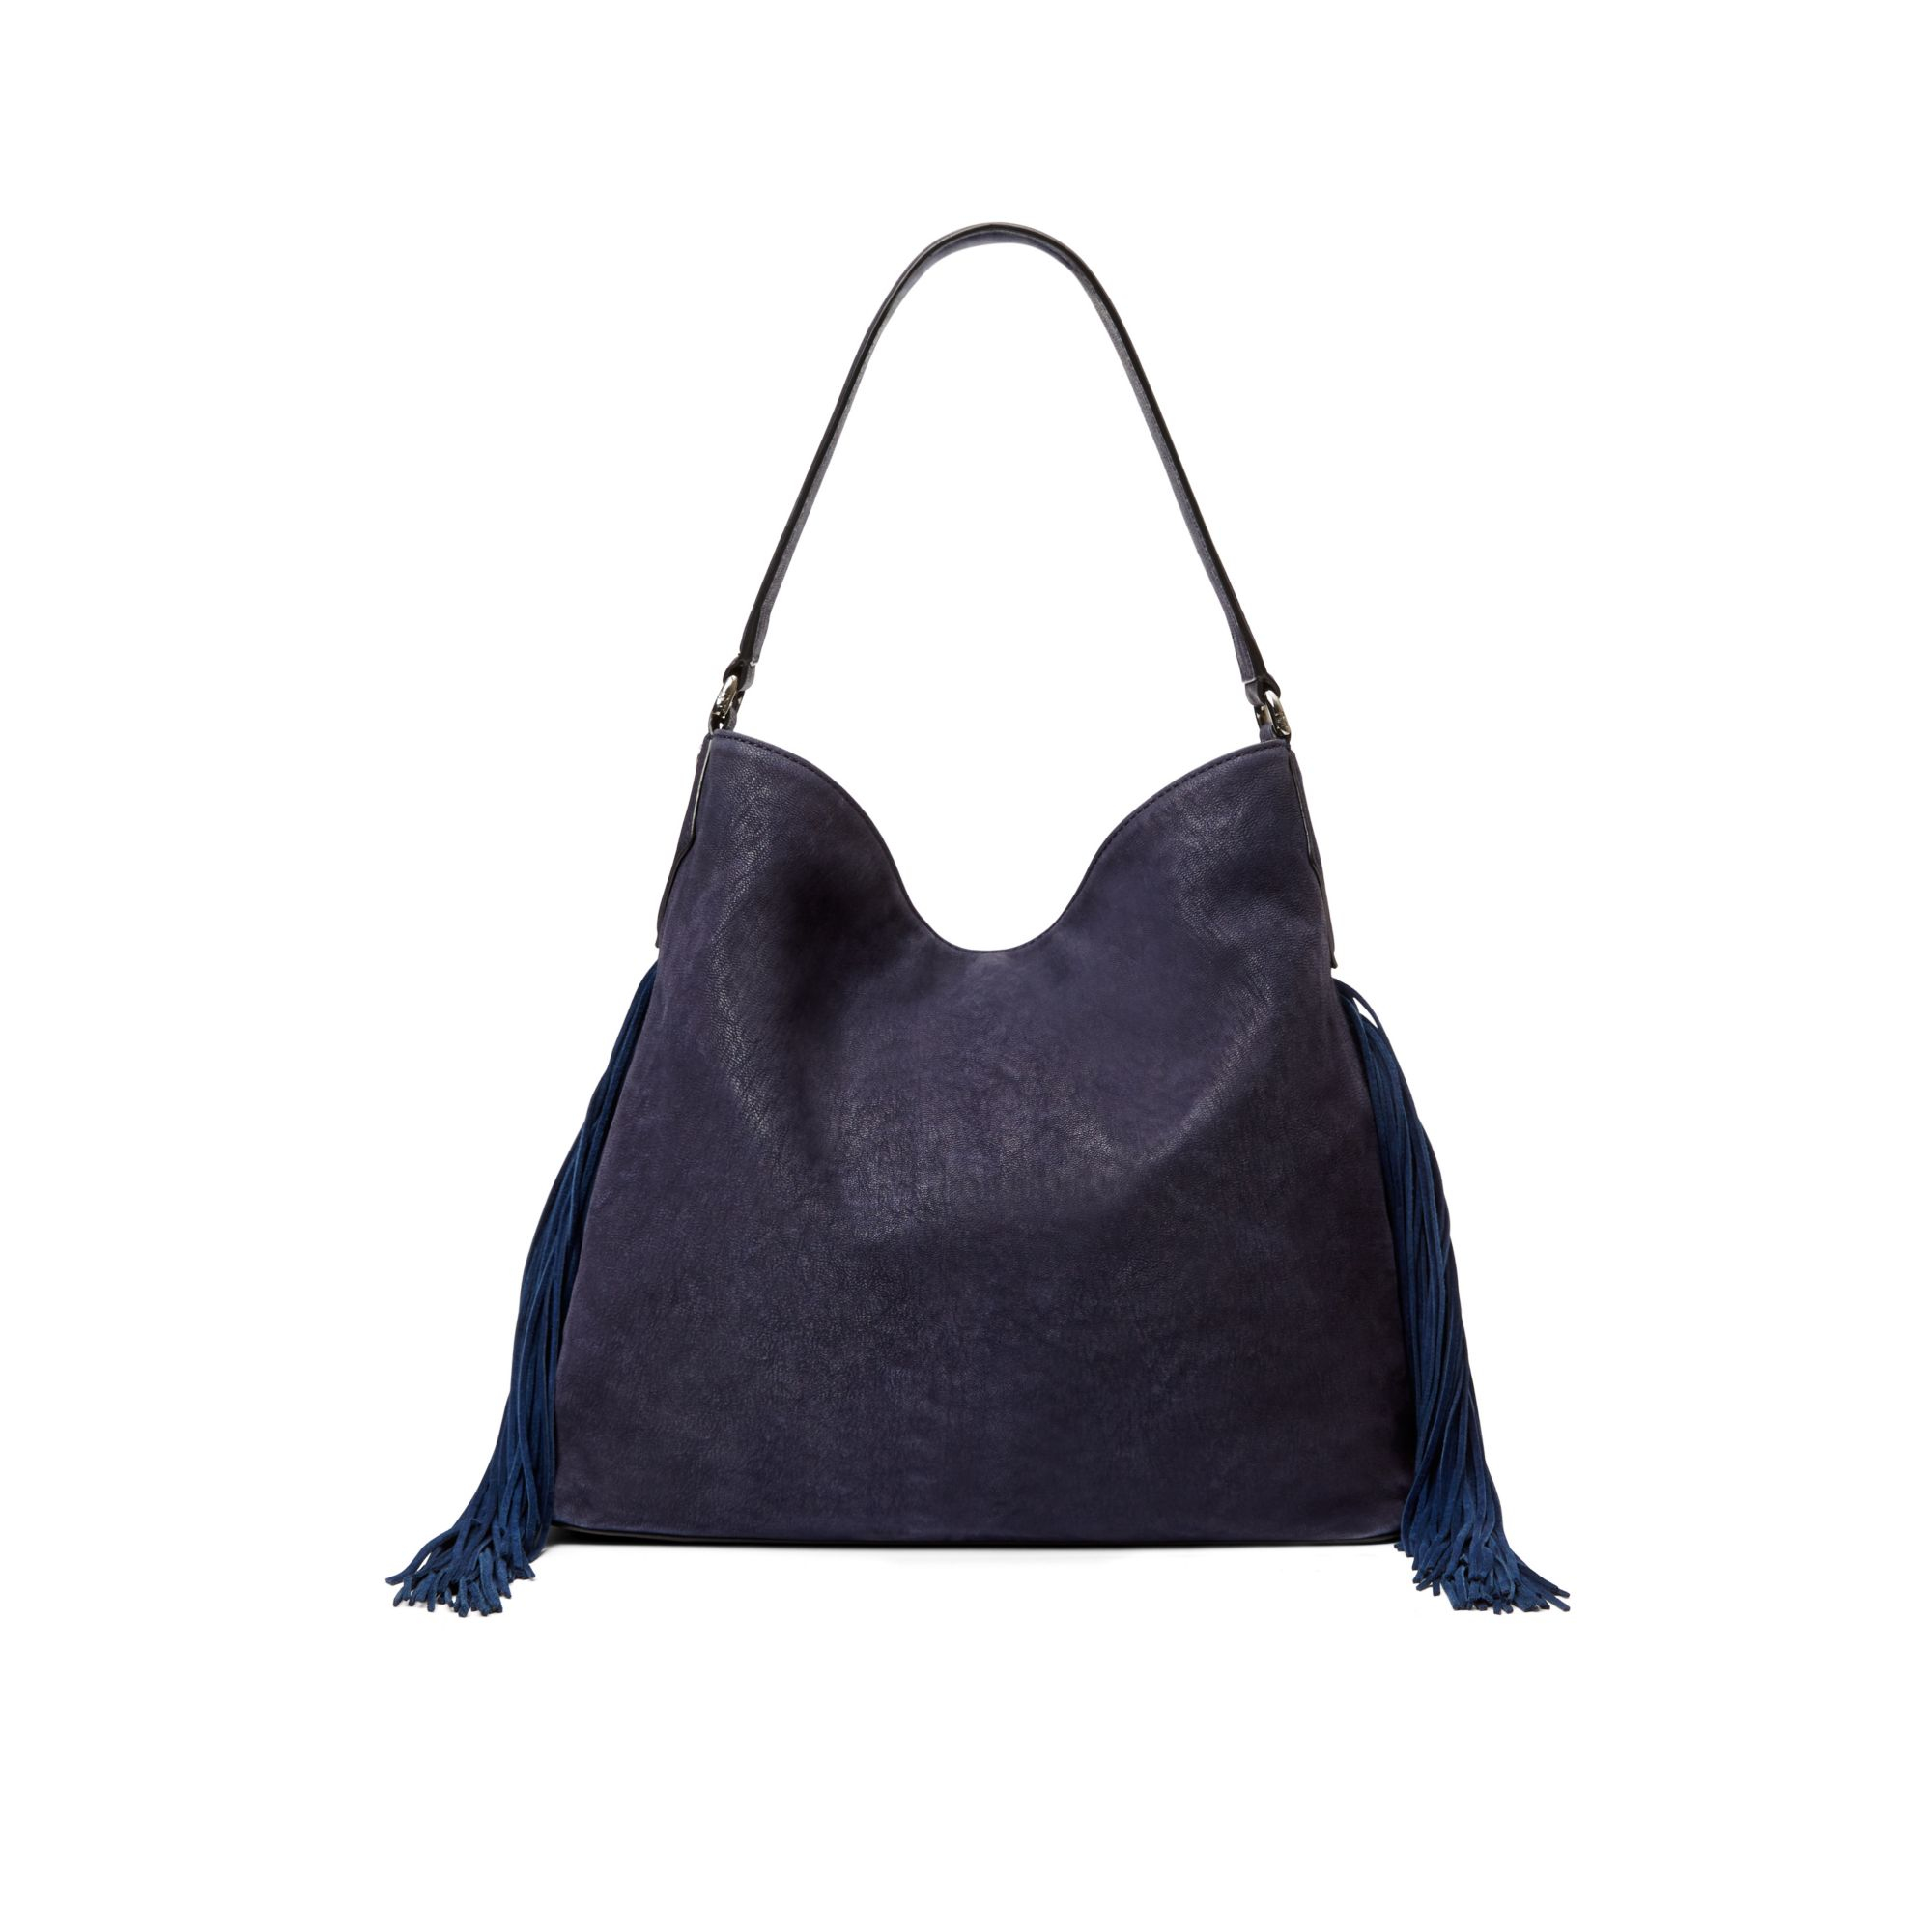 leather boho shoulder bag closeout 953fa c6256